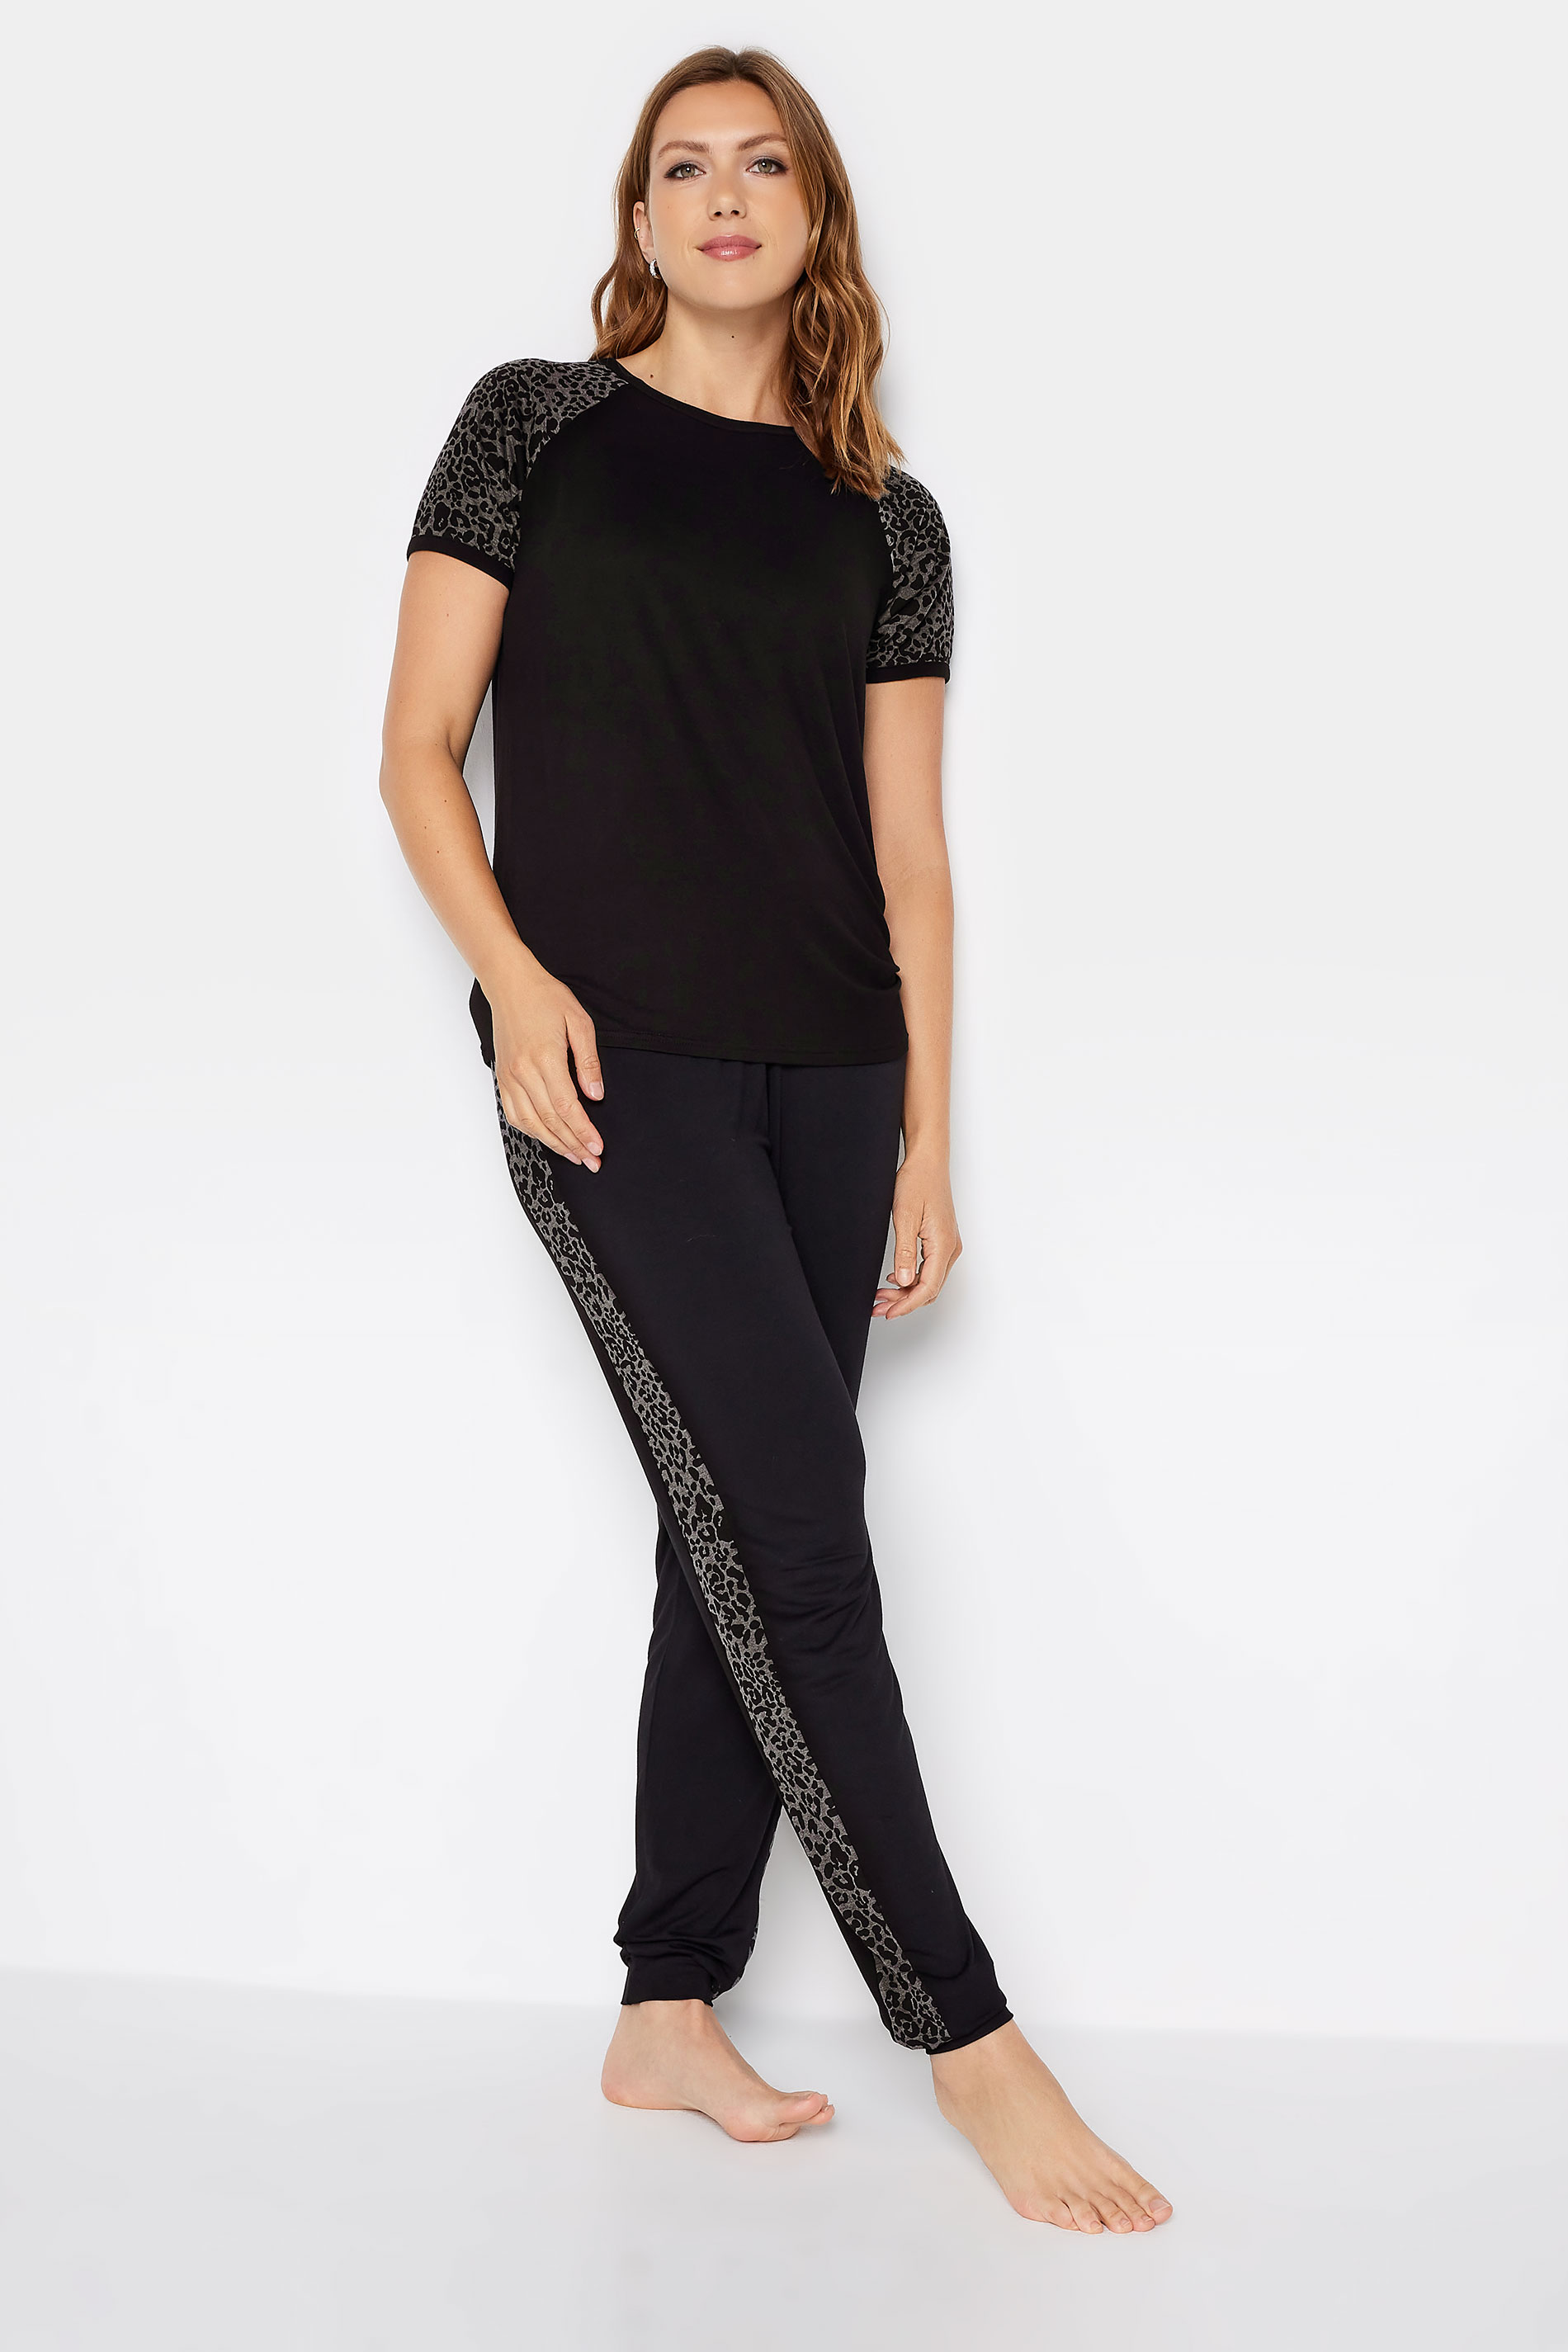 LTS Tall Women's Black Animal Print Raglan T-Shirt | Long Tall Sally 3